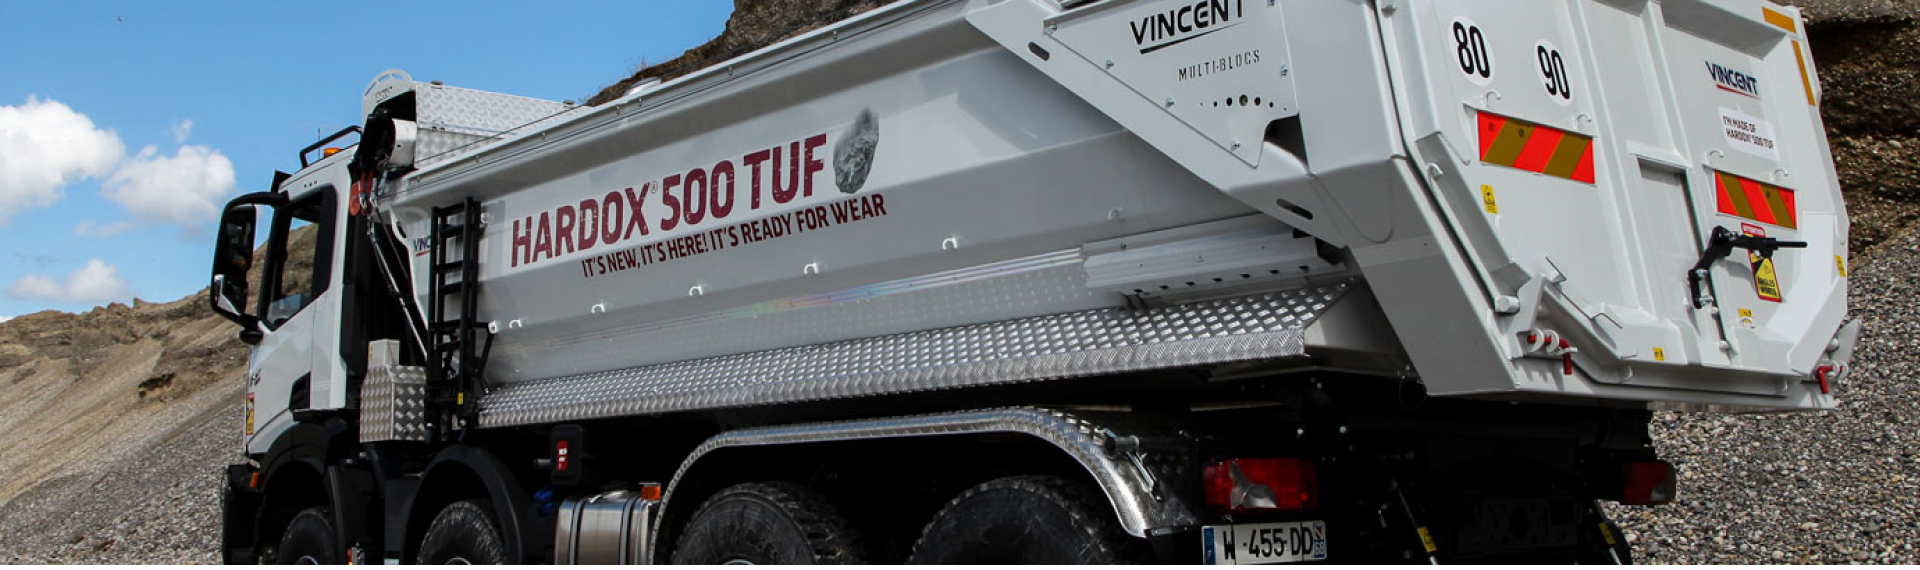 作业现场的自卸卡车，车斗由Hardox® 500 Tuf钢制成，并带有标语：全新升级，就在这里，随时准备投入使用！  